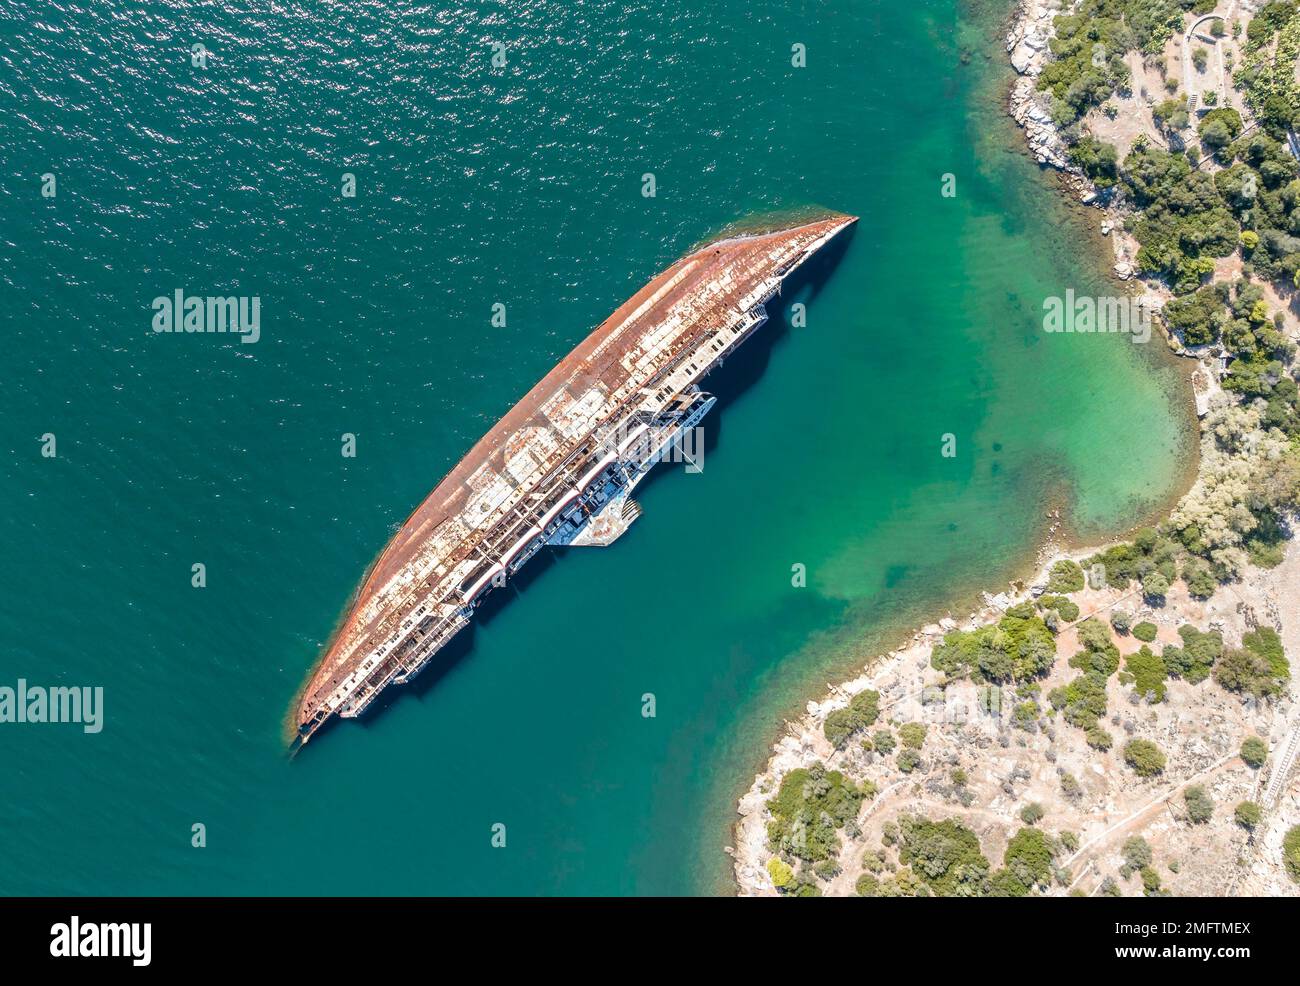 Vue aérienne, épave du bateau Mediterranean Sky, Baie d'Eleusis, Attique, Grèce Banque D'Images